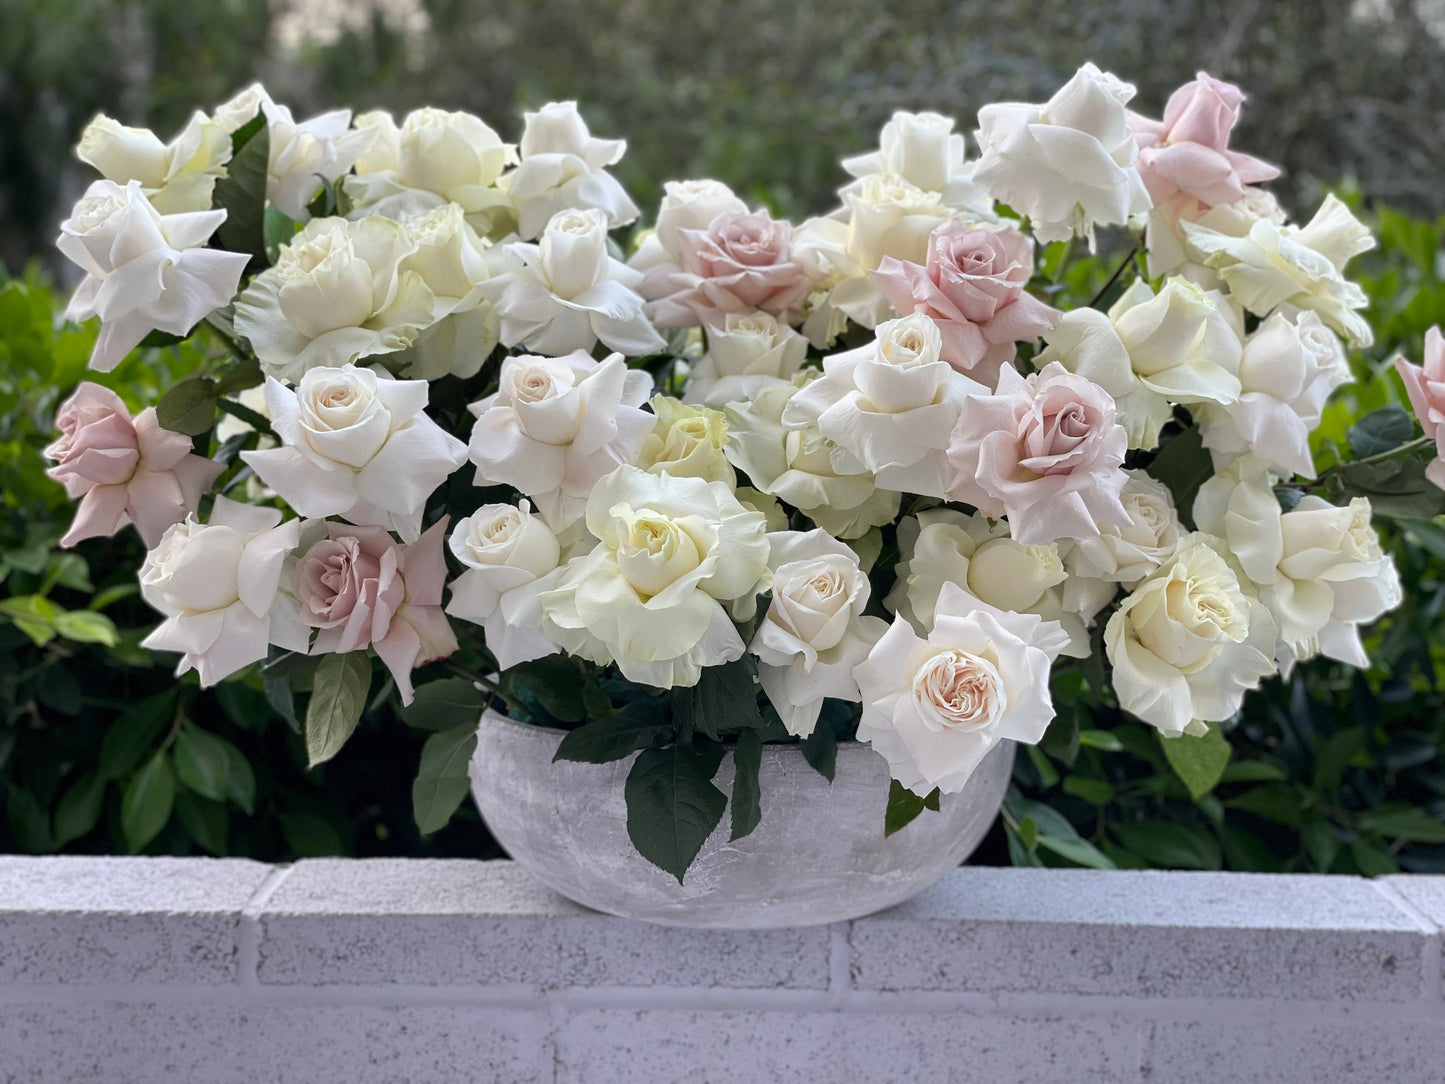 Vase with roses for beloved mother